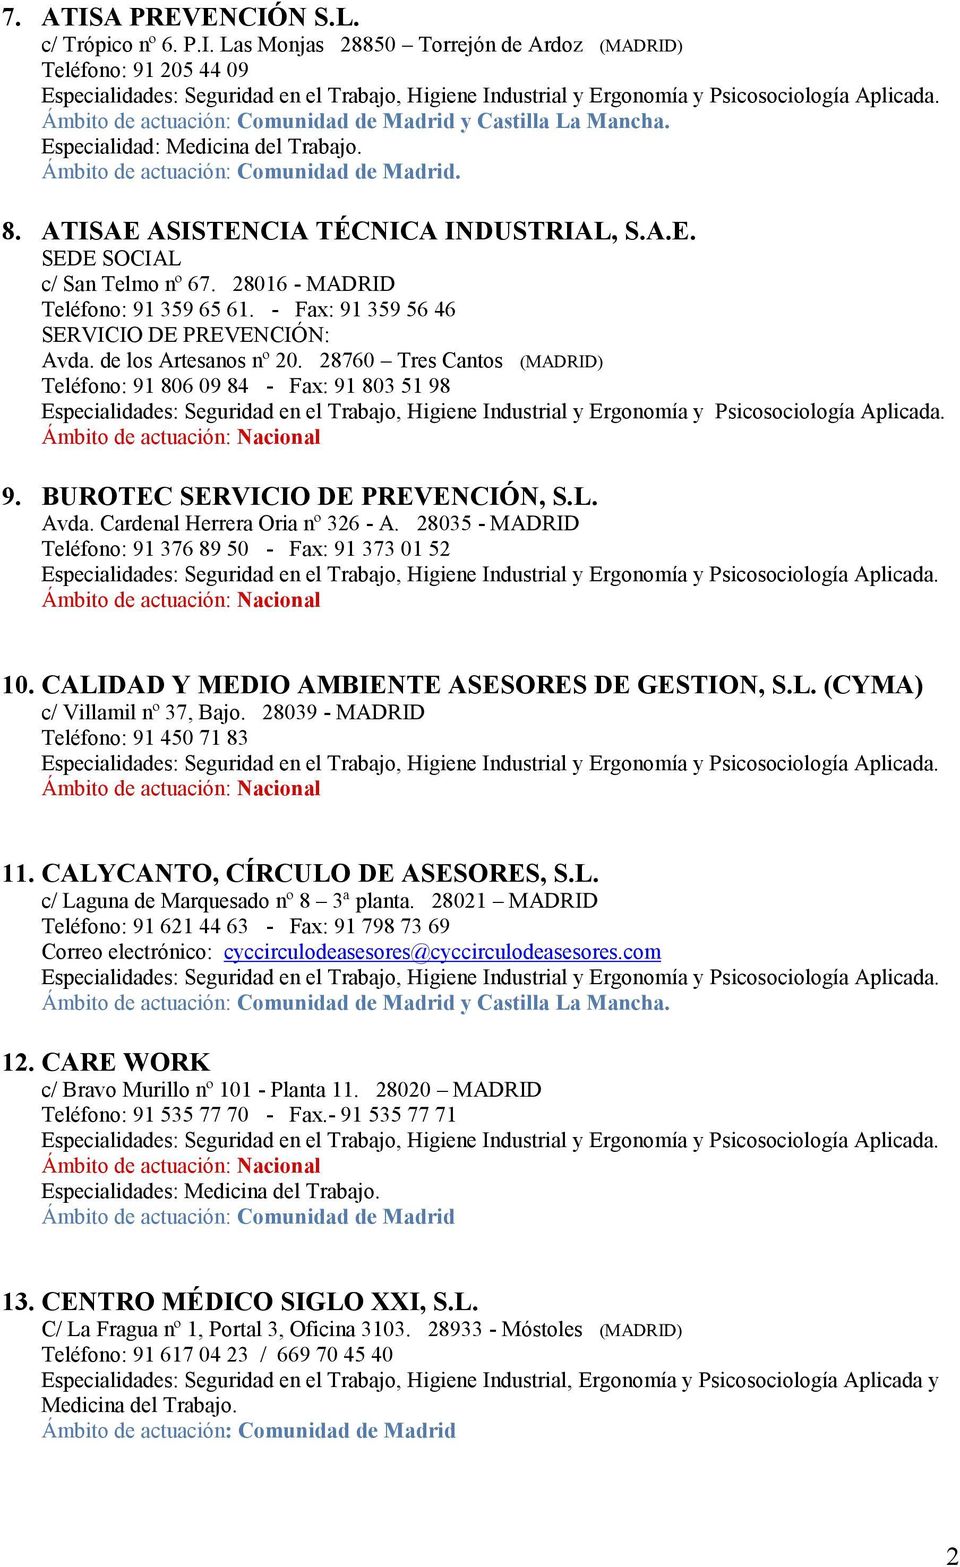 BUROTEC SERVICIO DE PREVENCIÓN, S.L. Avda. Cardenal Herrera Oria nº 326 - A. 28035 - MADRID Teléfono: 91 376 89 50 - Fax: 91 373 01 52 10. CALIDAD Y MEDIO AMBIENTE ASESORES DE GESTION, S.L. (CYMA) c/ Villamil nº 37, Bajo.